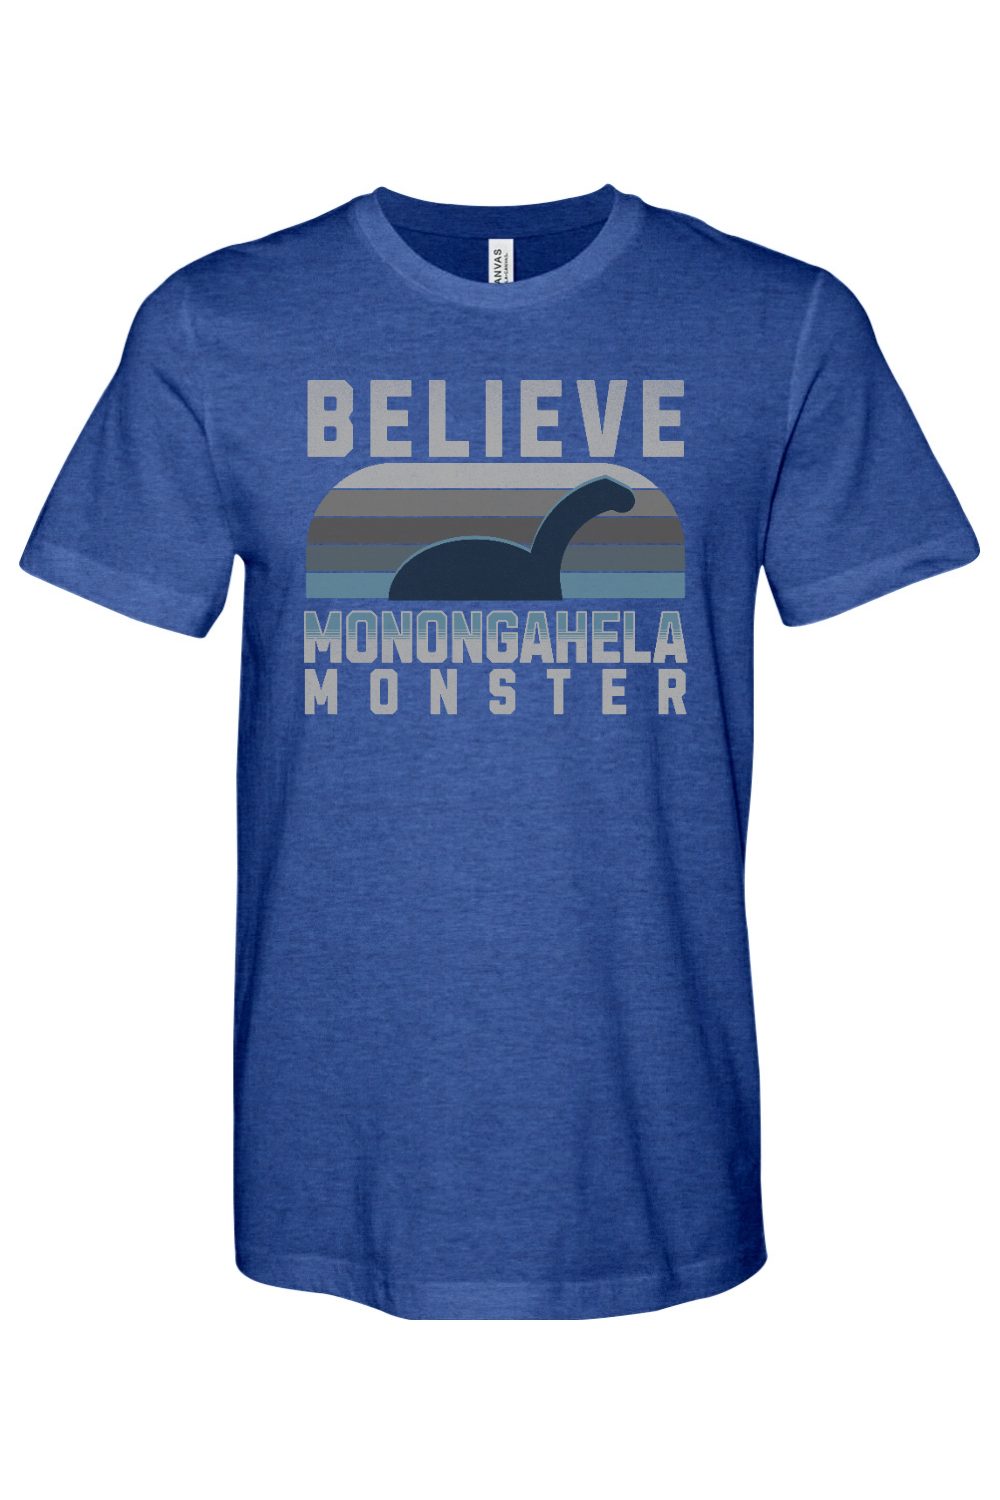 Believe - Monongahela Monster - Yinzylvania